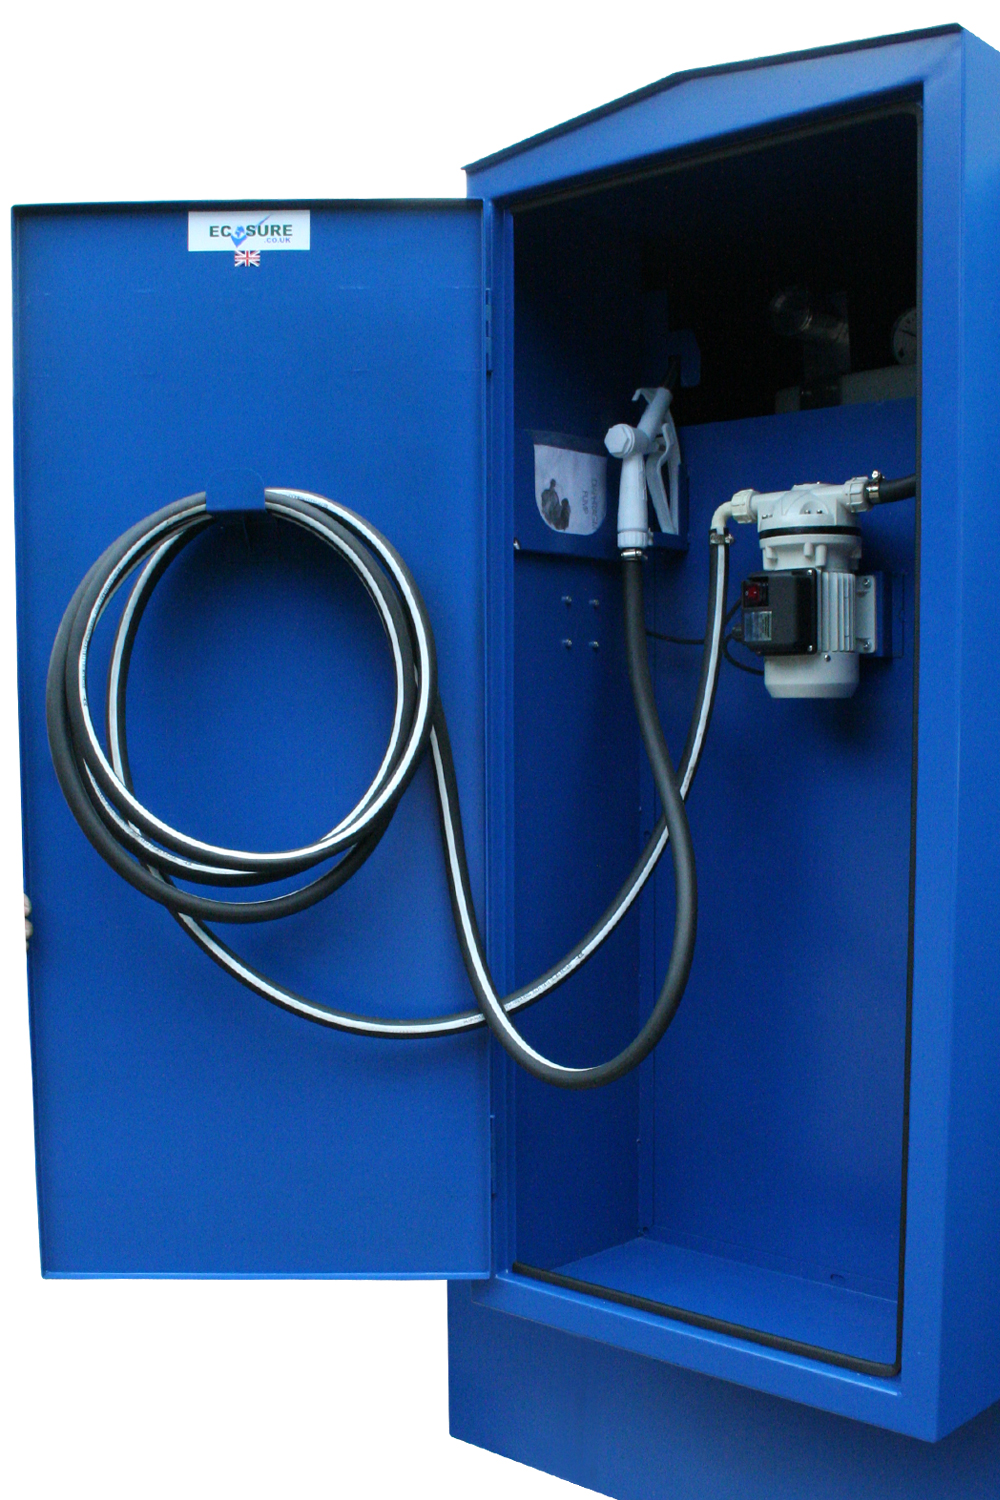 AdBlue dispenser door open